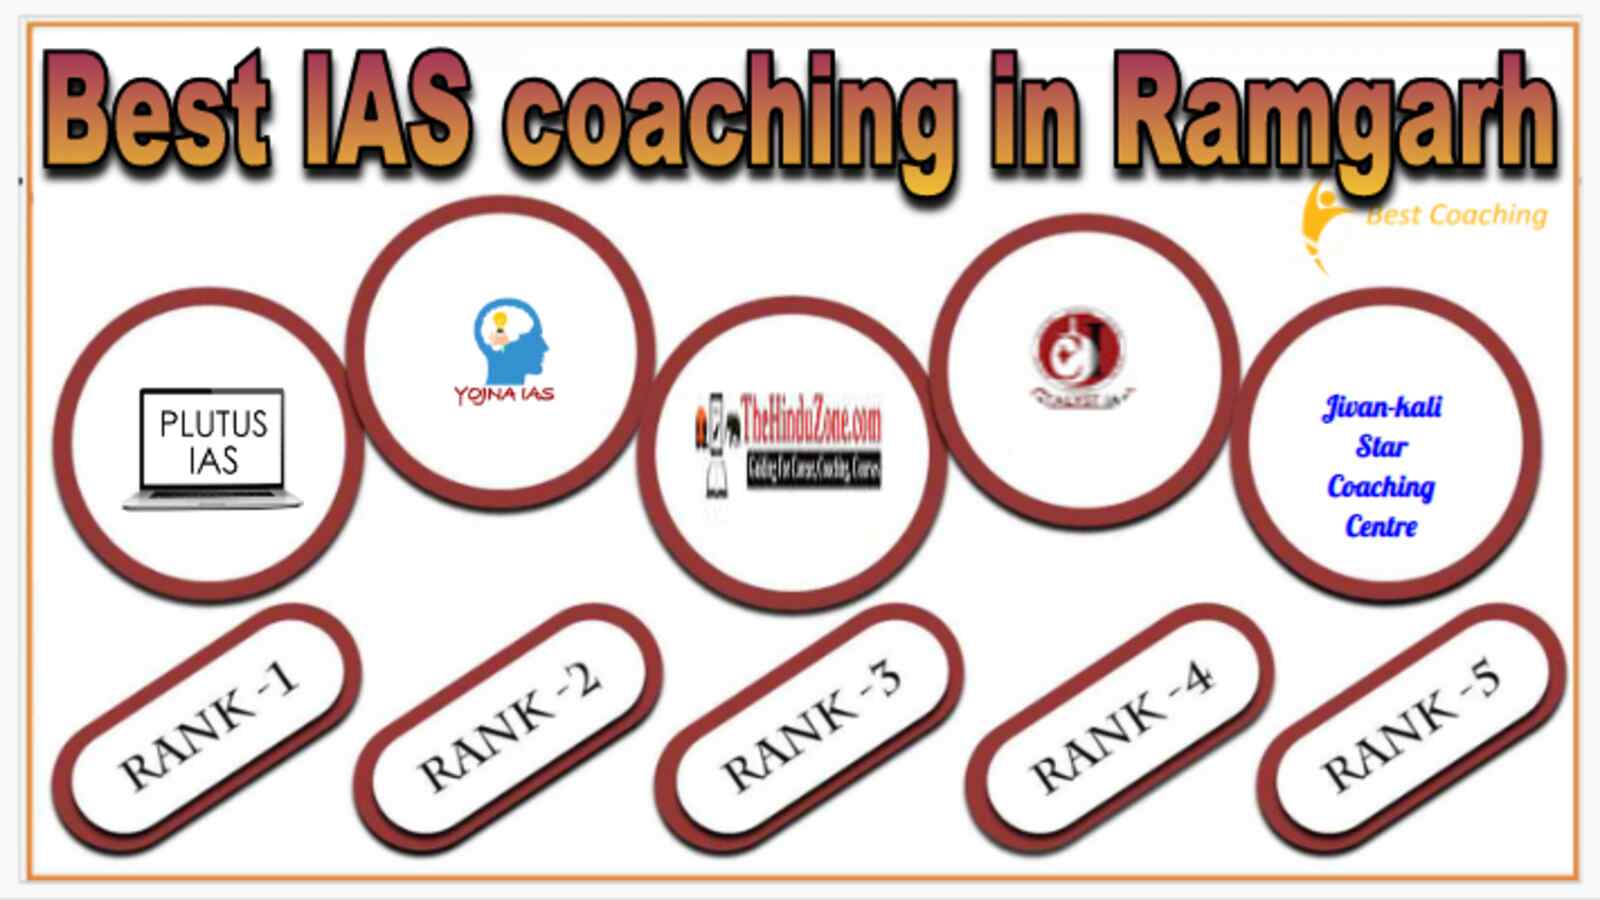 Best IAS coaching in Ramgarh